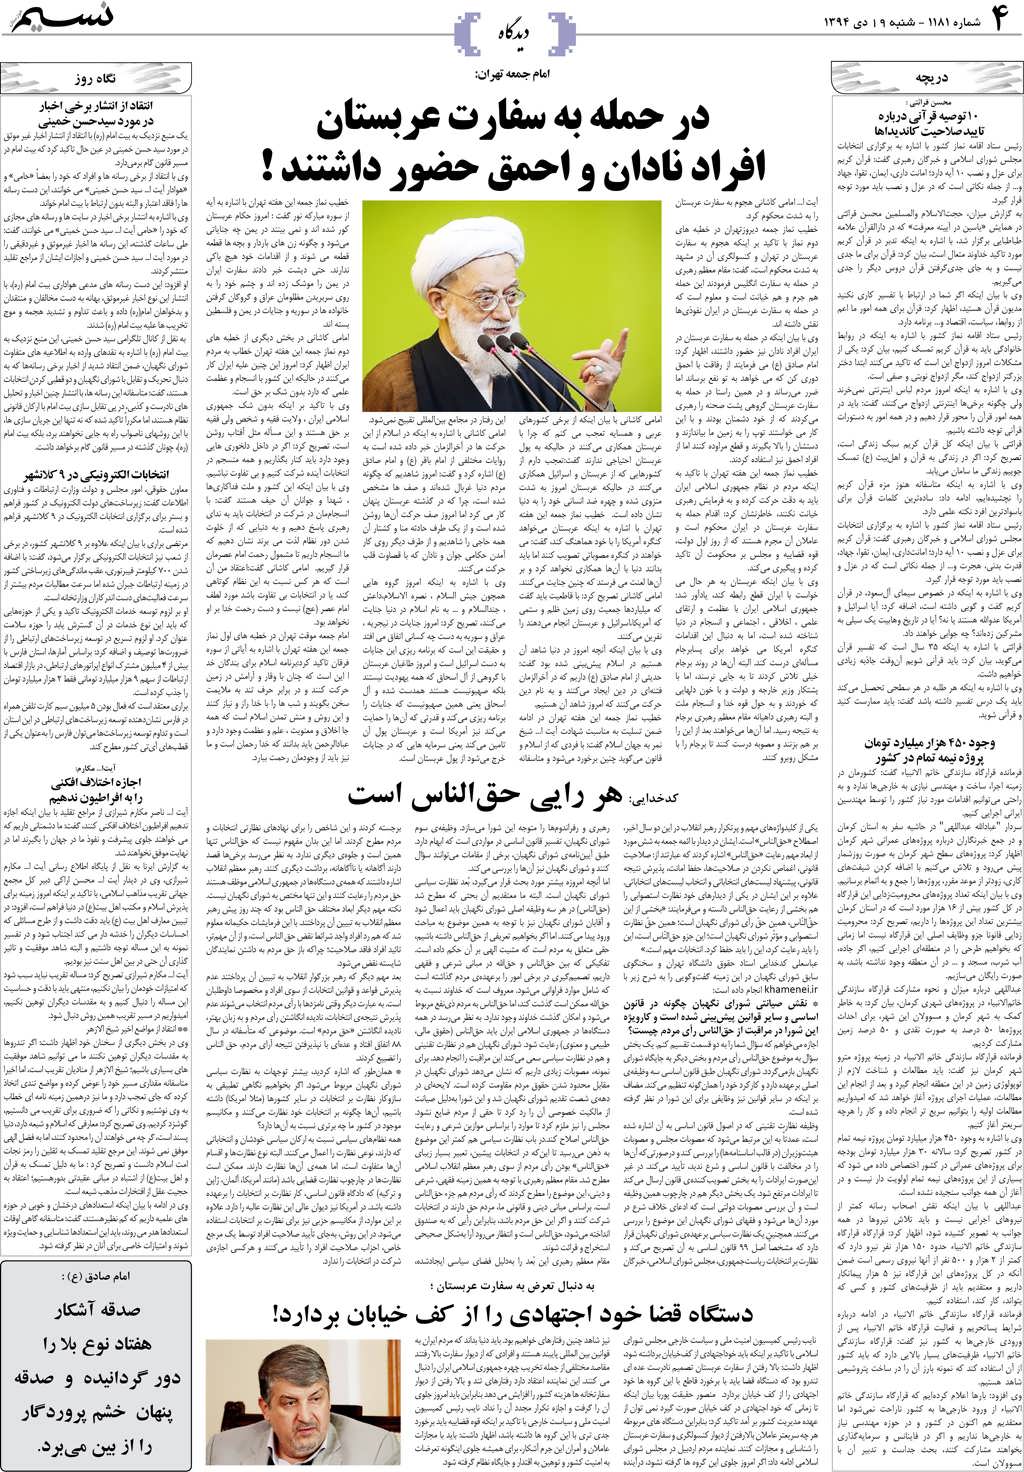 صفحه دیدگاه روزنامه نسیم شماره 1181